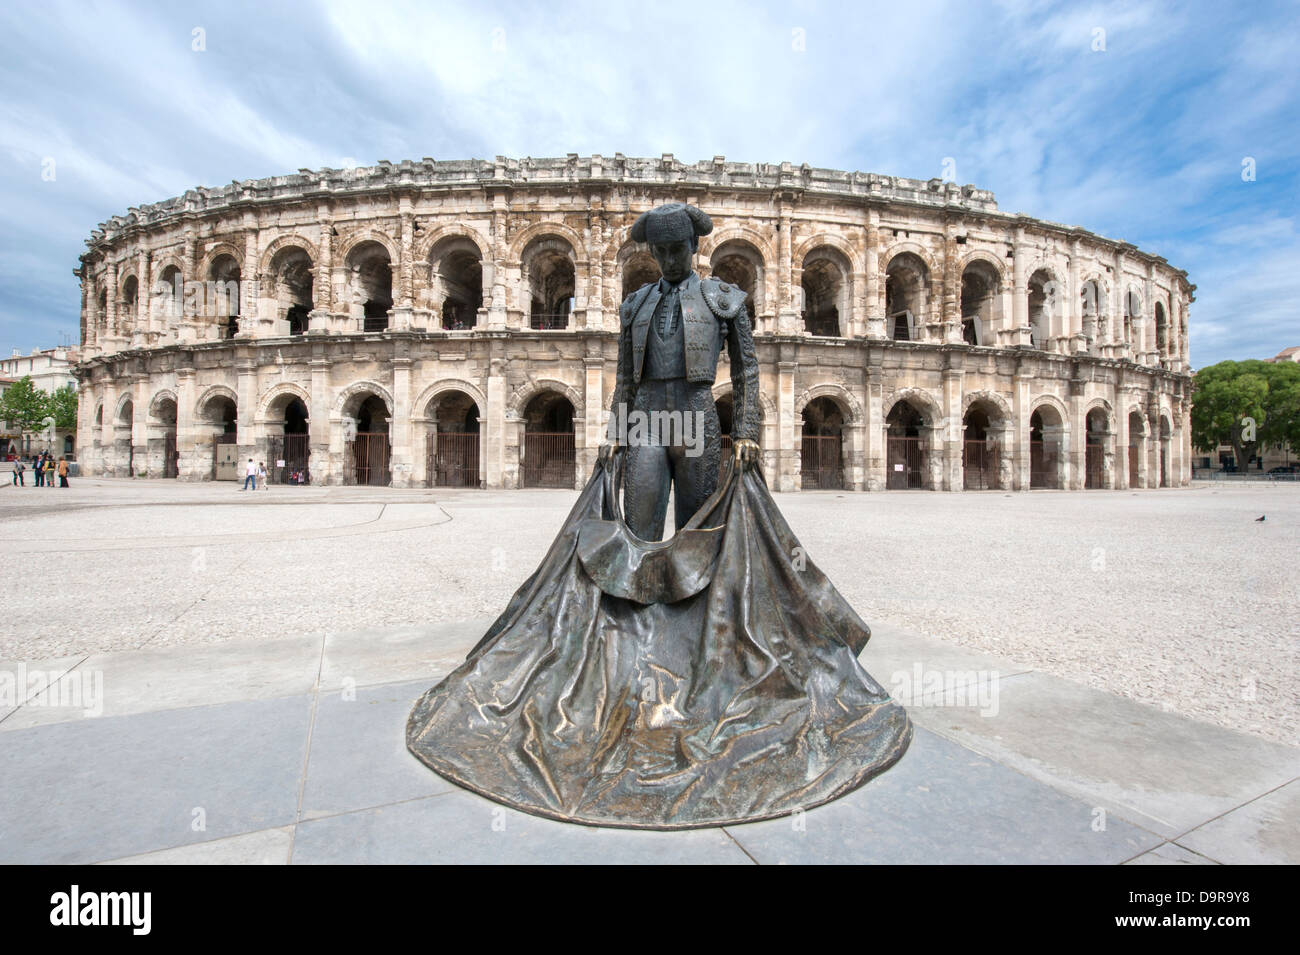 Statue du célèbre bull-fighter Nimeño devant les Arénes, l'amphithéâtre romain de Nîmes, Languedoc, France Banque D'Images